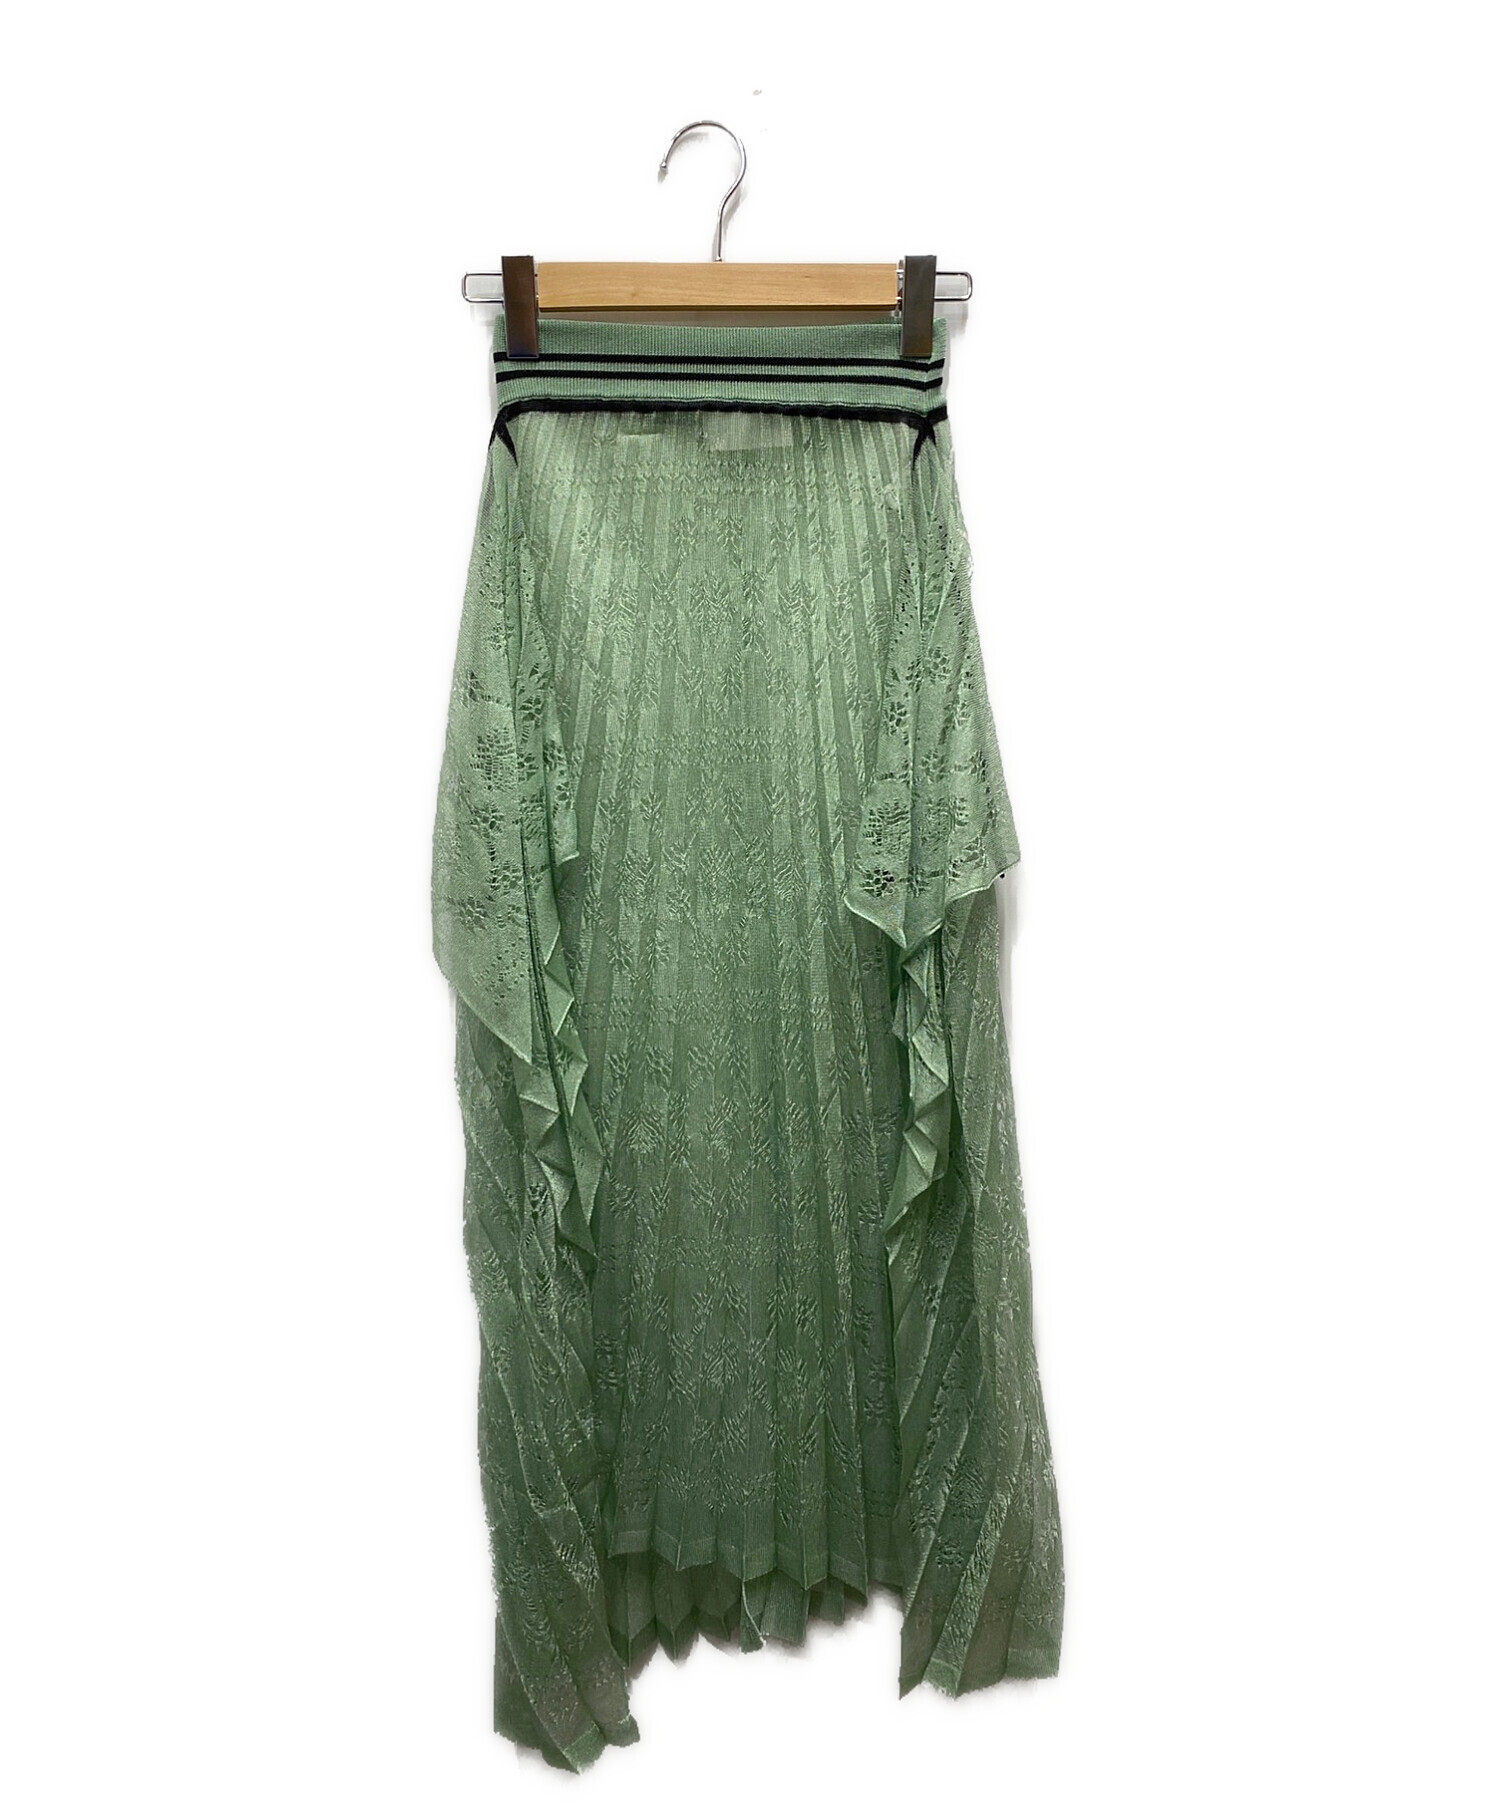 7,200円mame kurogouchi Wrapping Knit Skirt